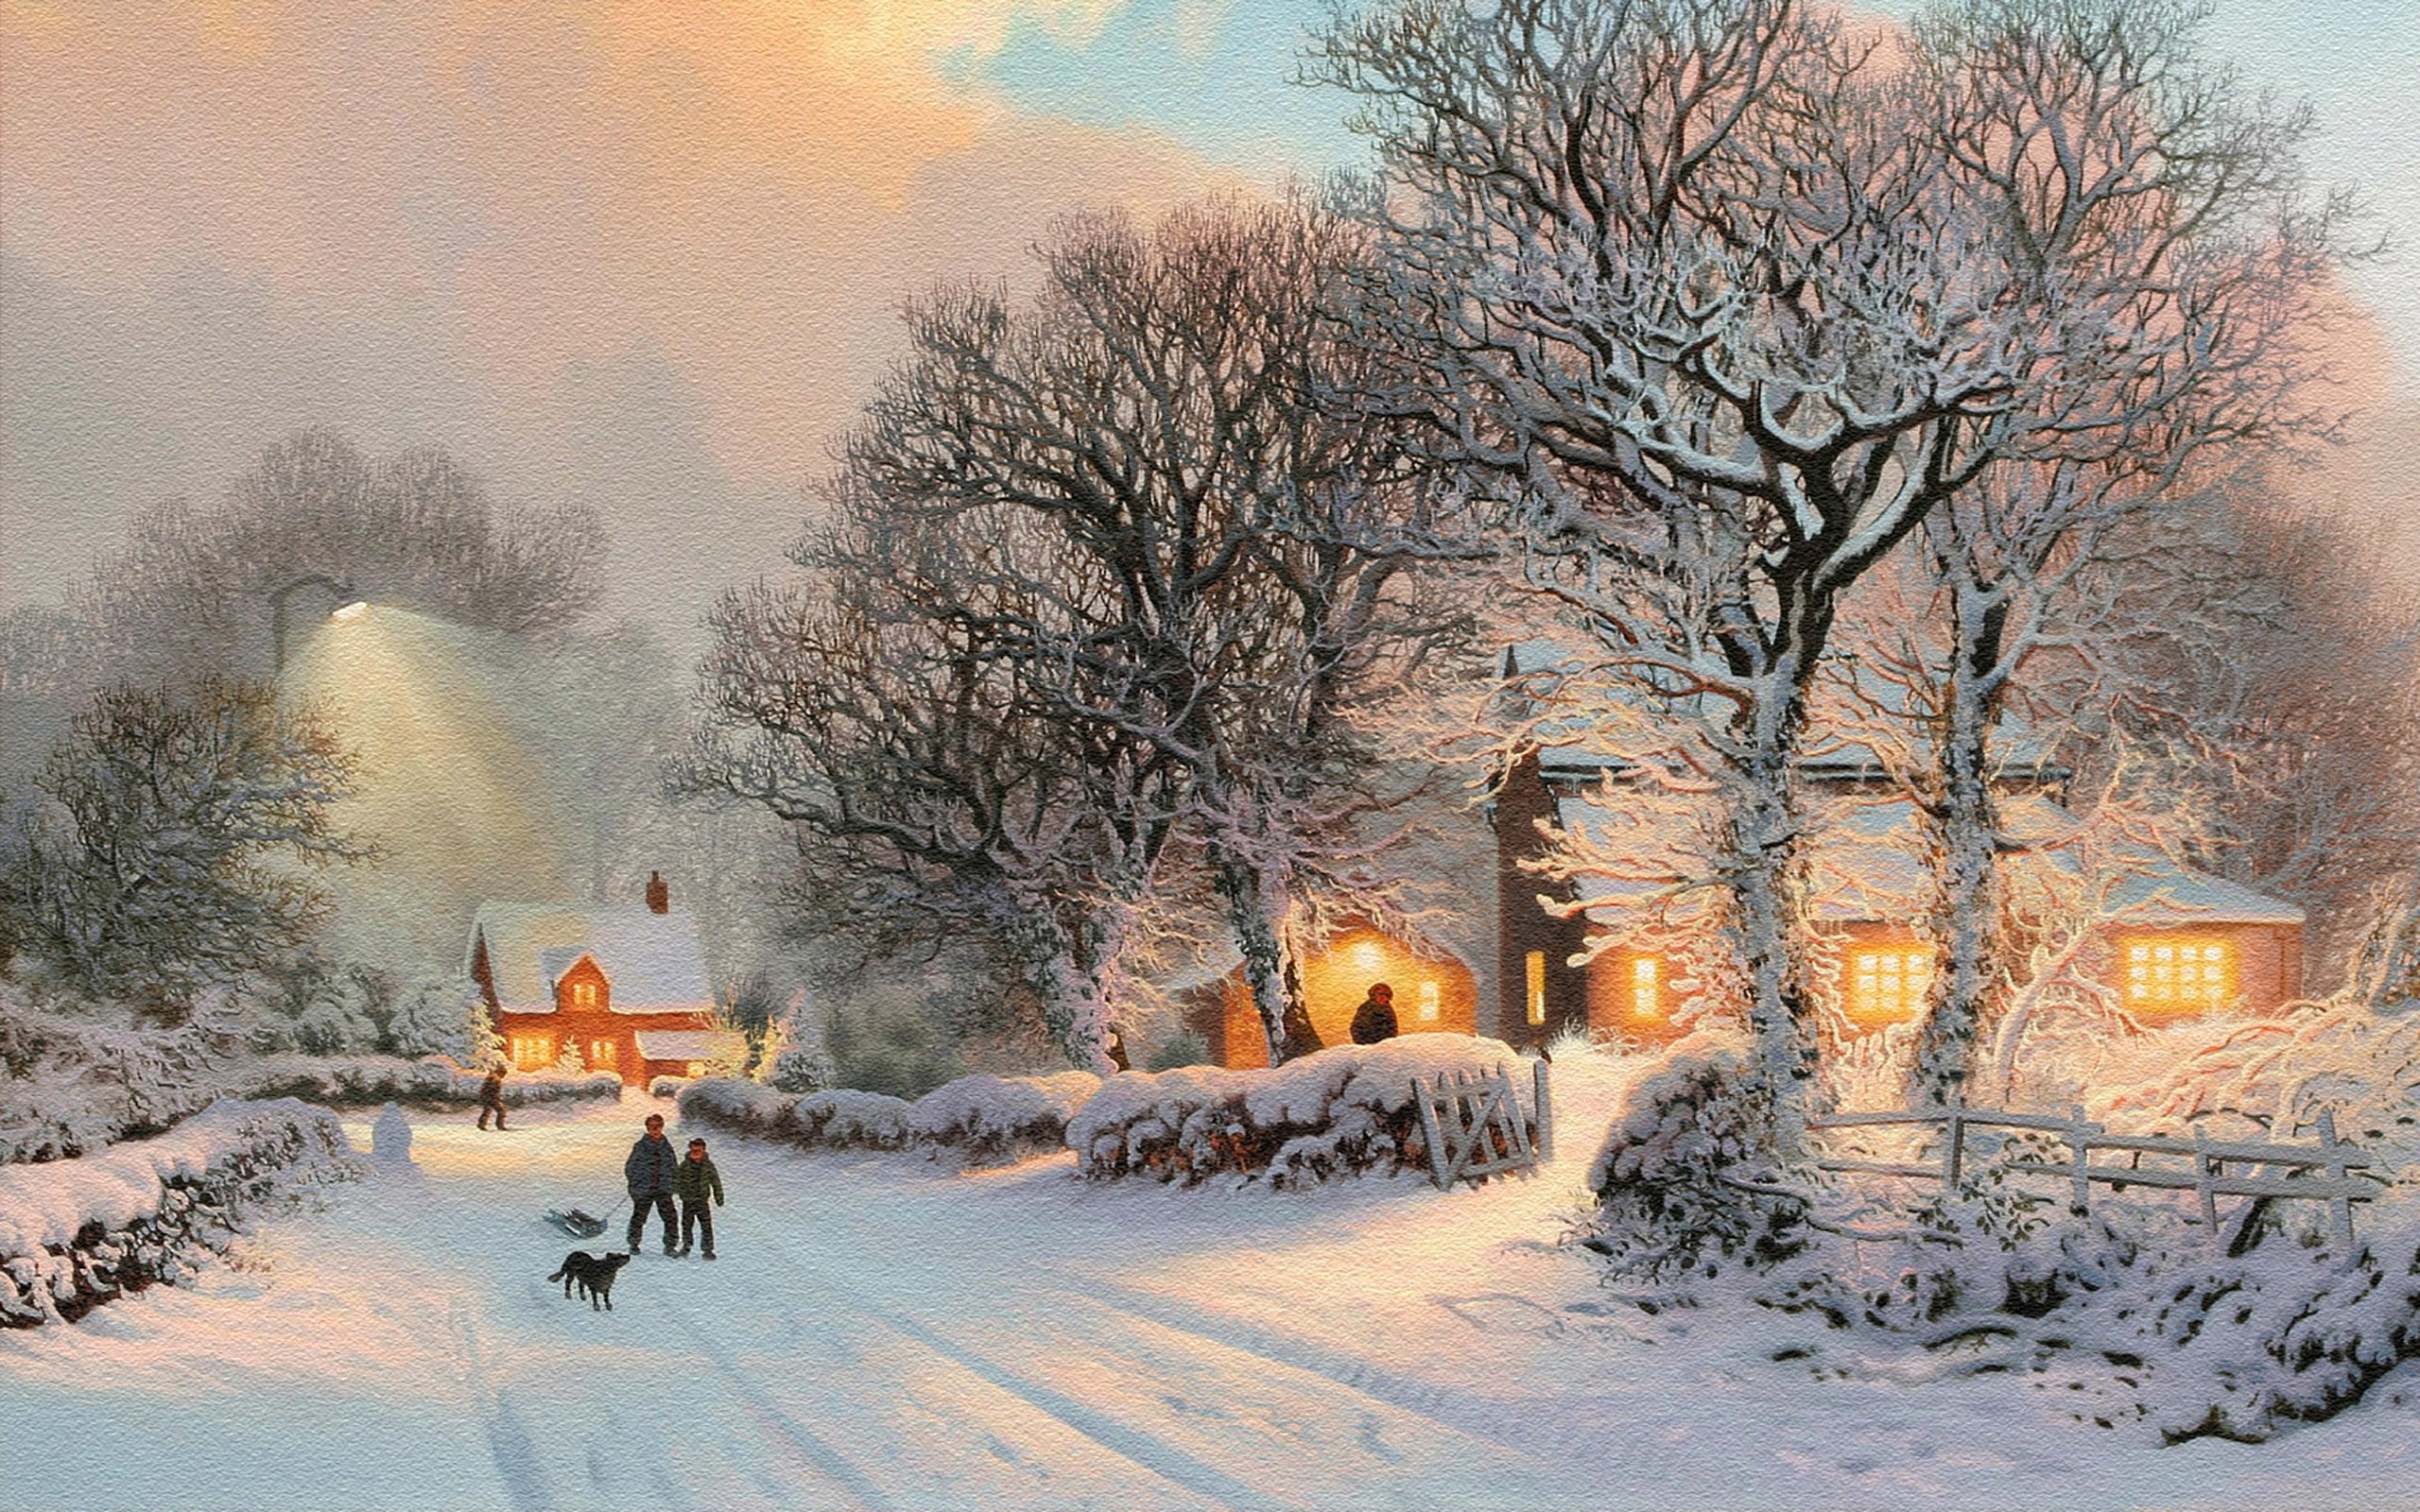 2560x1600 Winter Snow Scenes Wallpapers